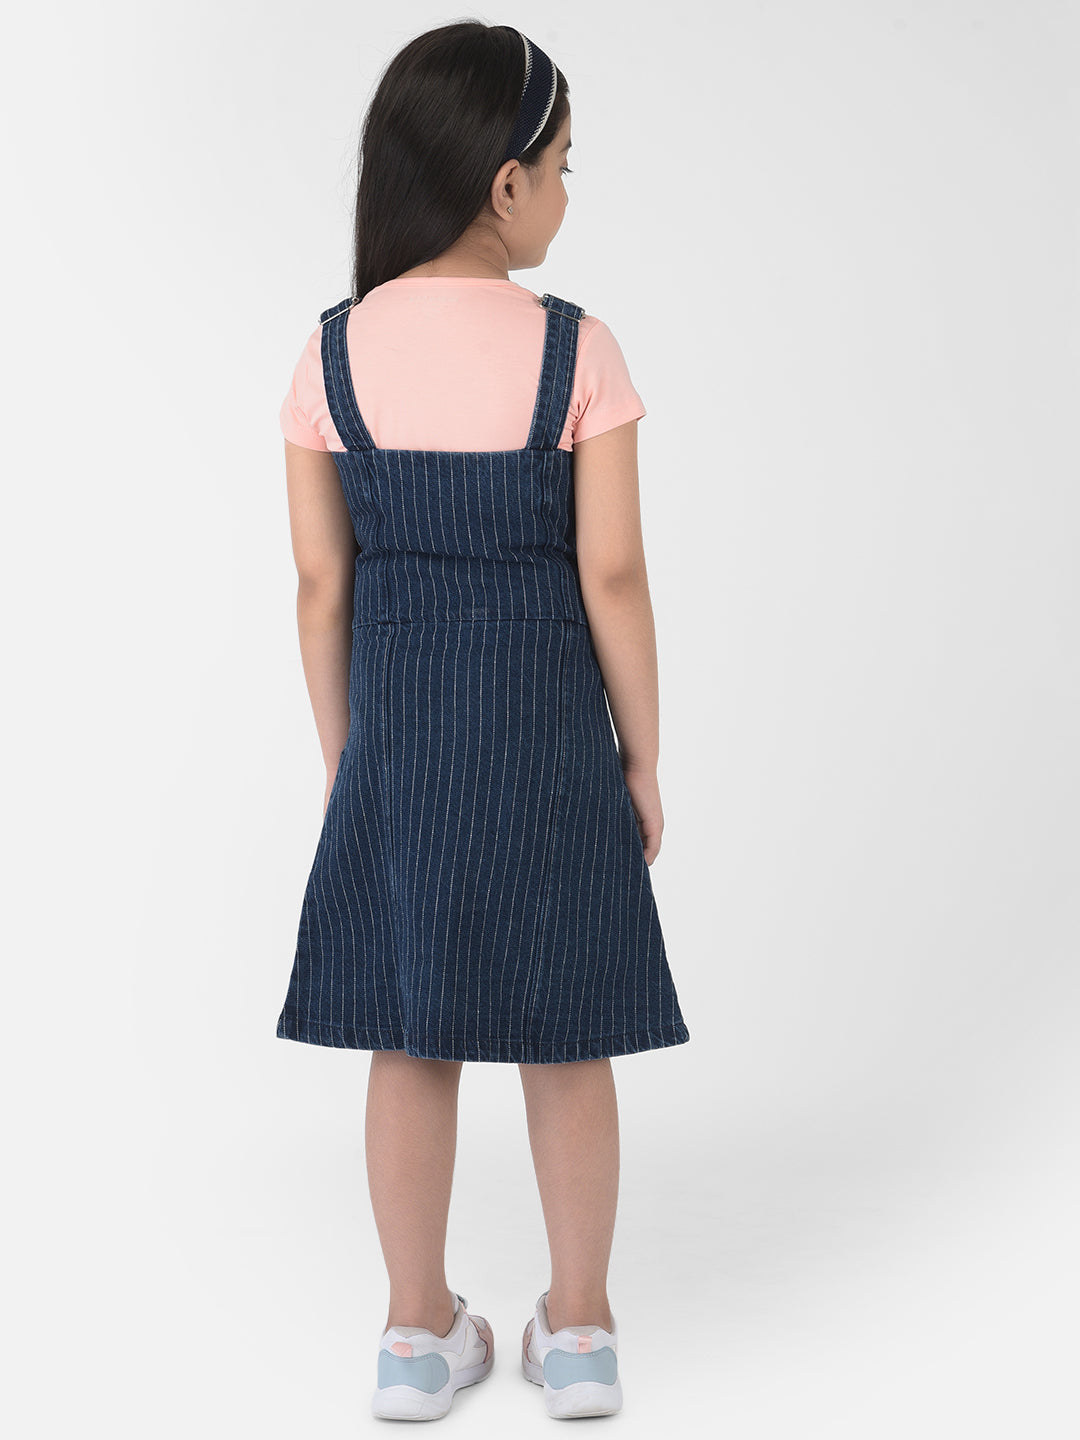 Navy Blue Striped Pinafore Dress - Girls Dress